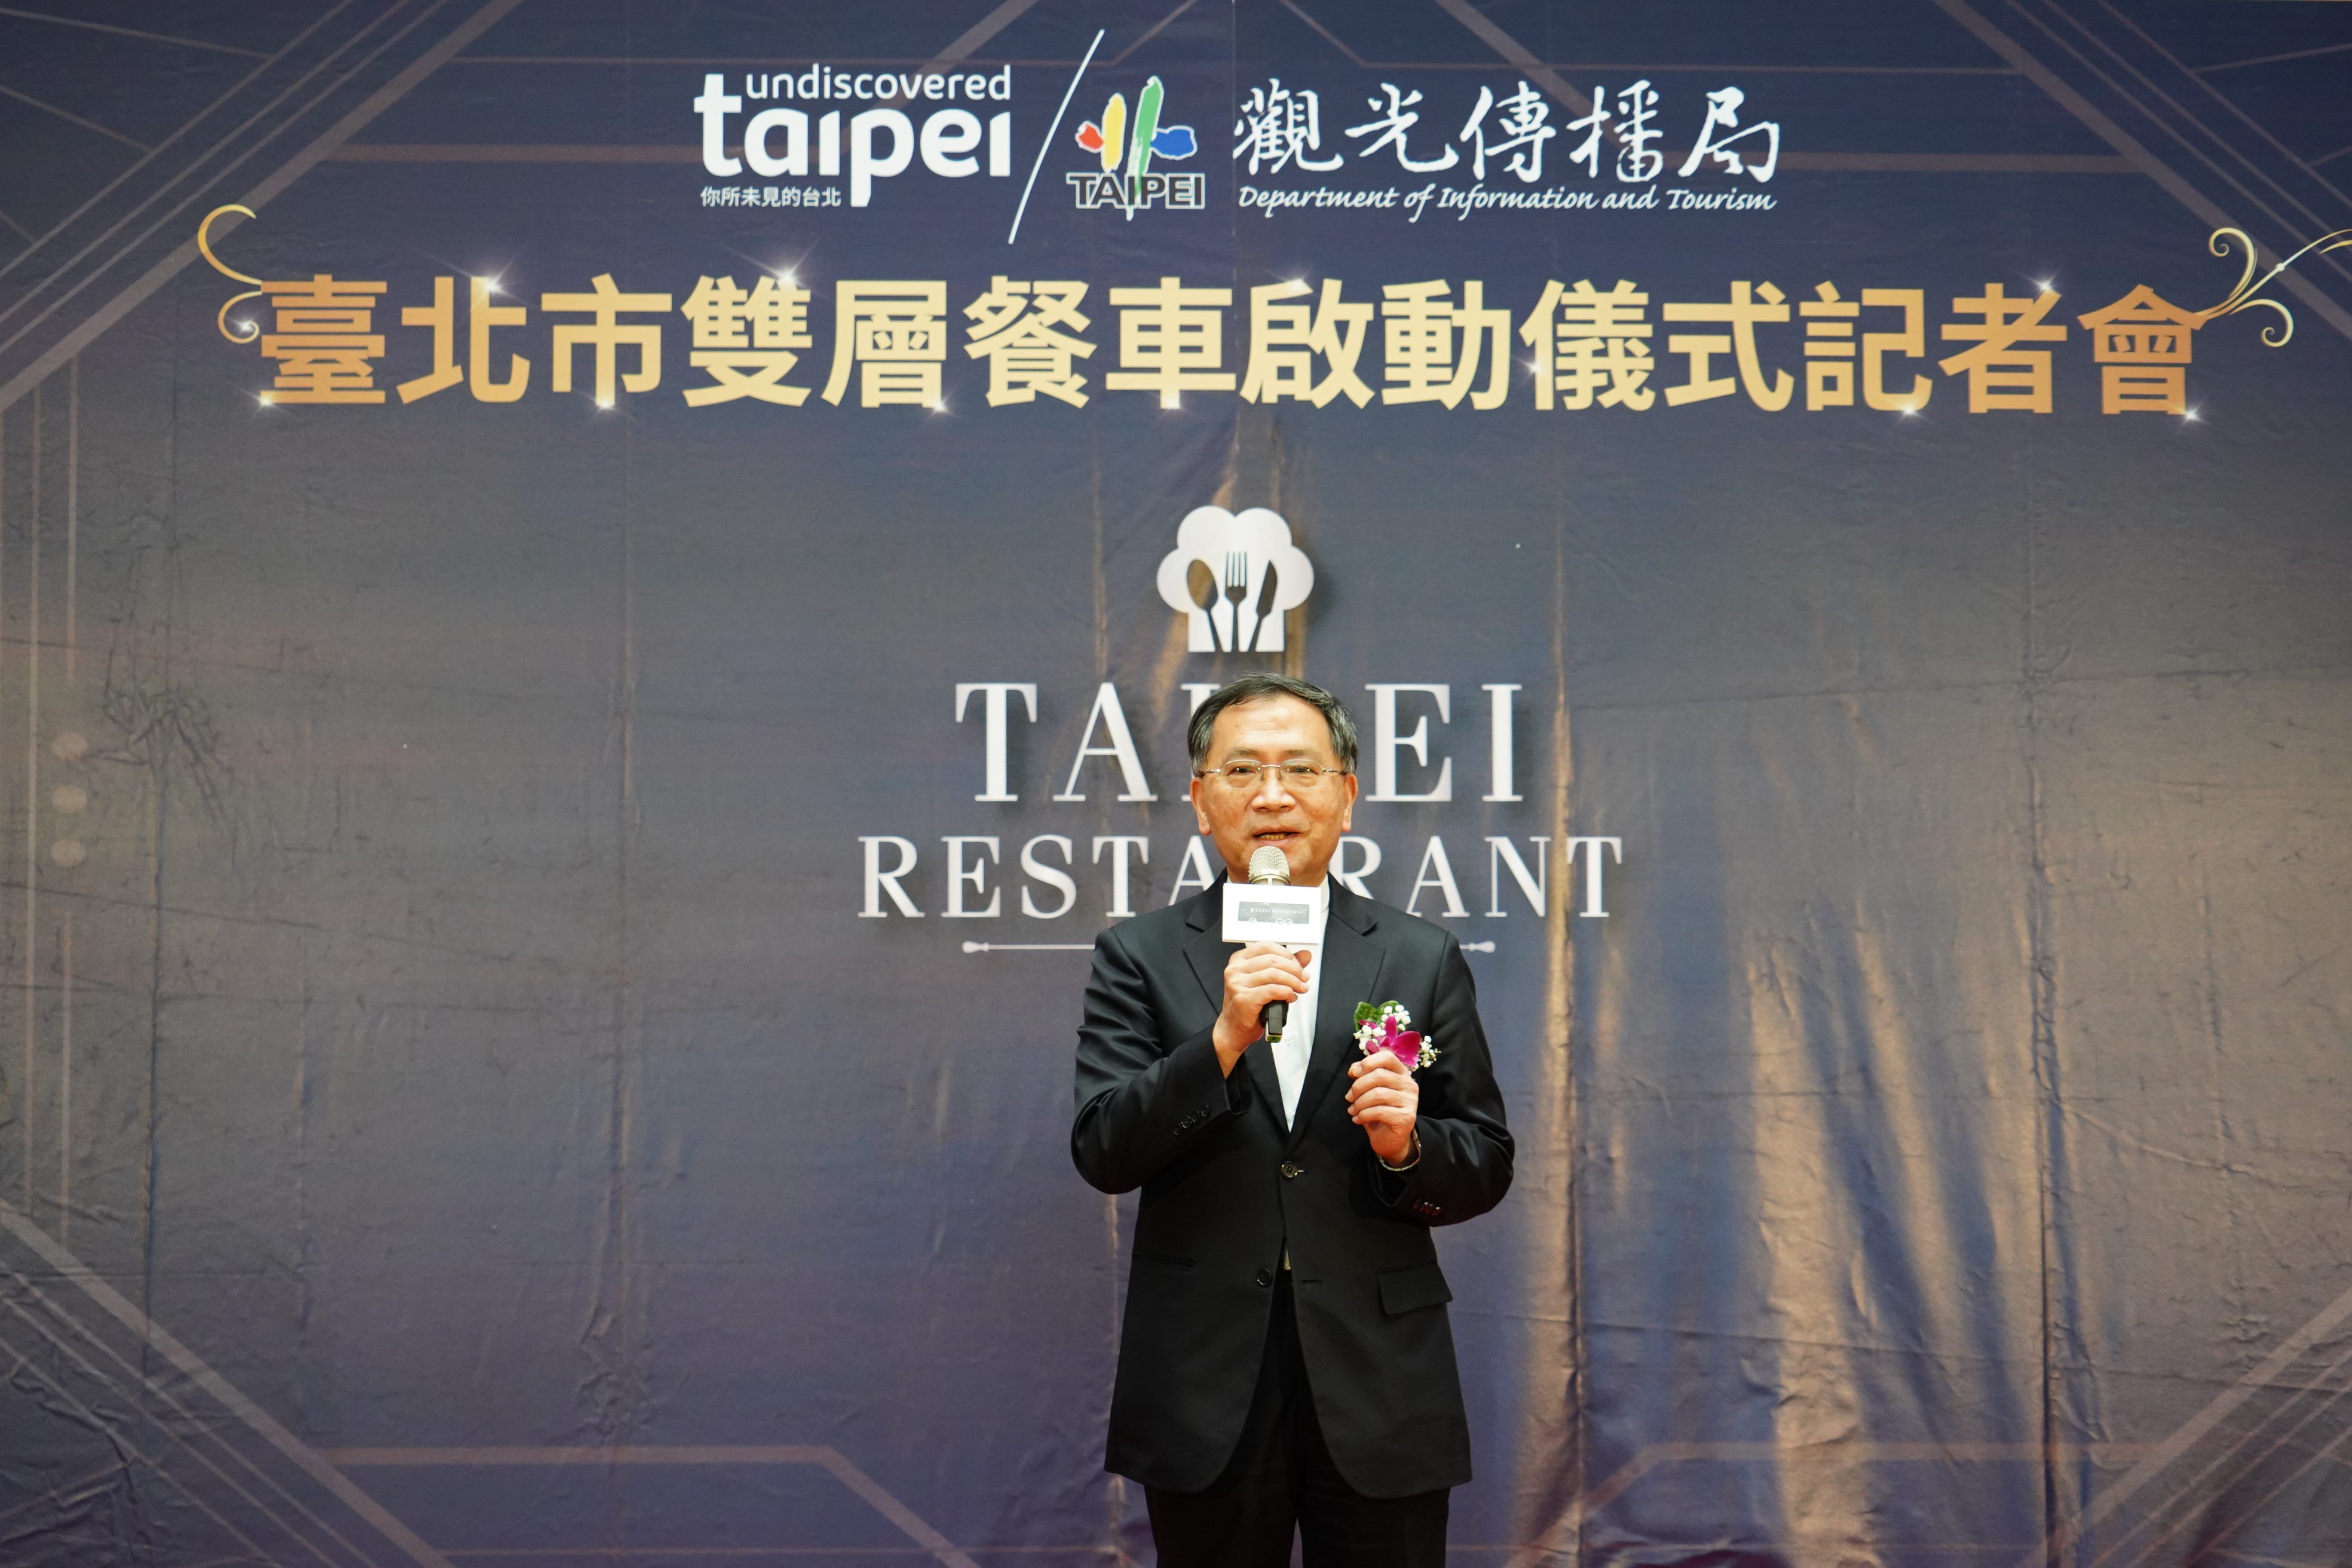 臺北市副市長蔡炳坤邀請大家一起來臺北體驗雙層餐車。